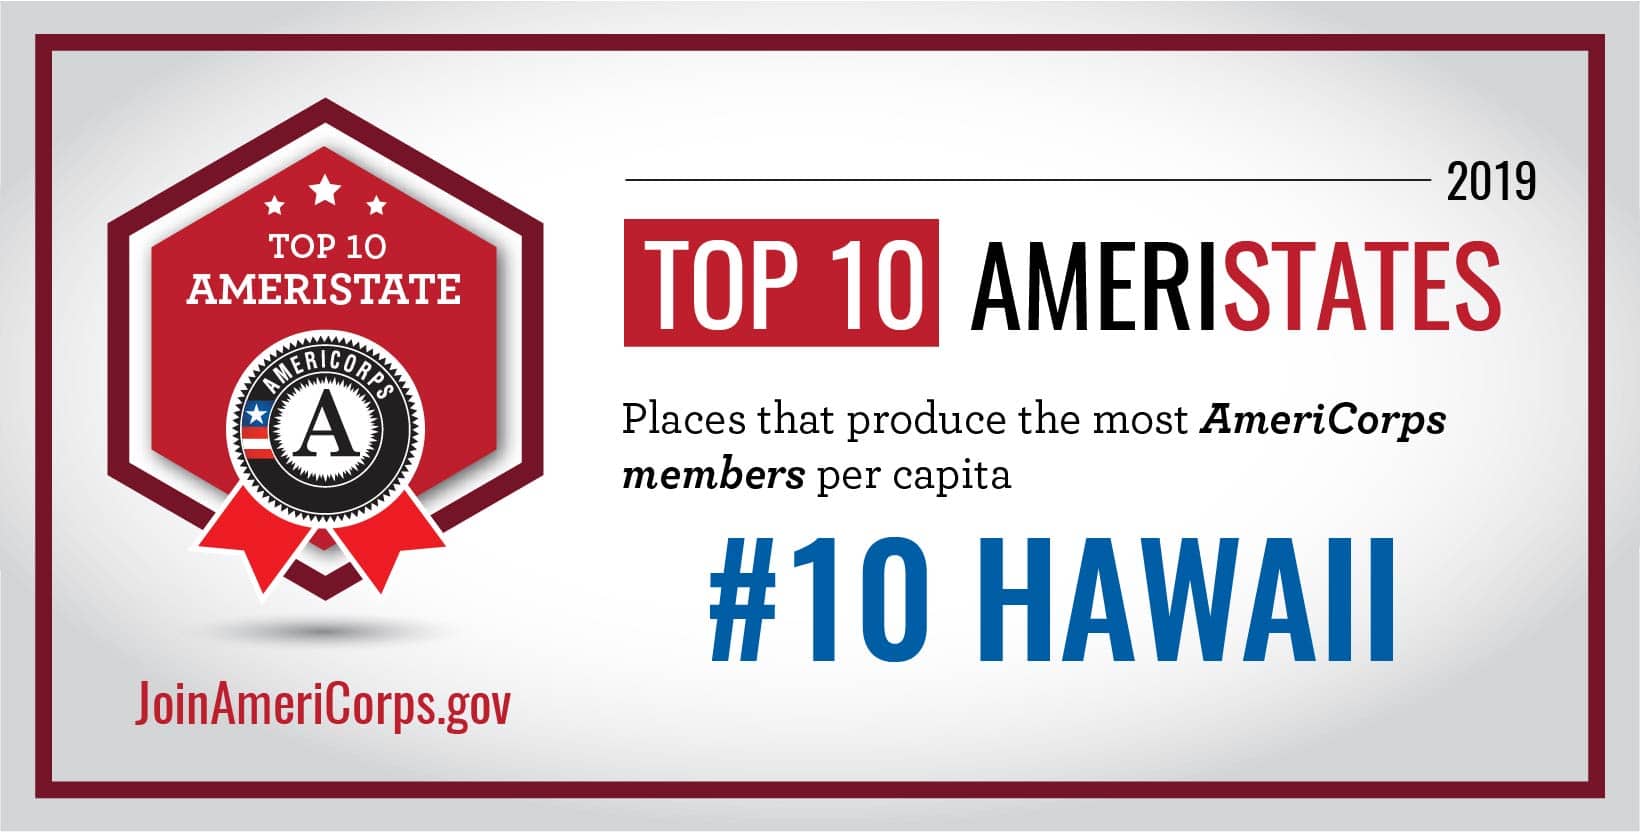 Hawaii in Top Ten AmeriStates